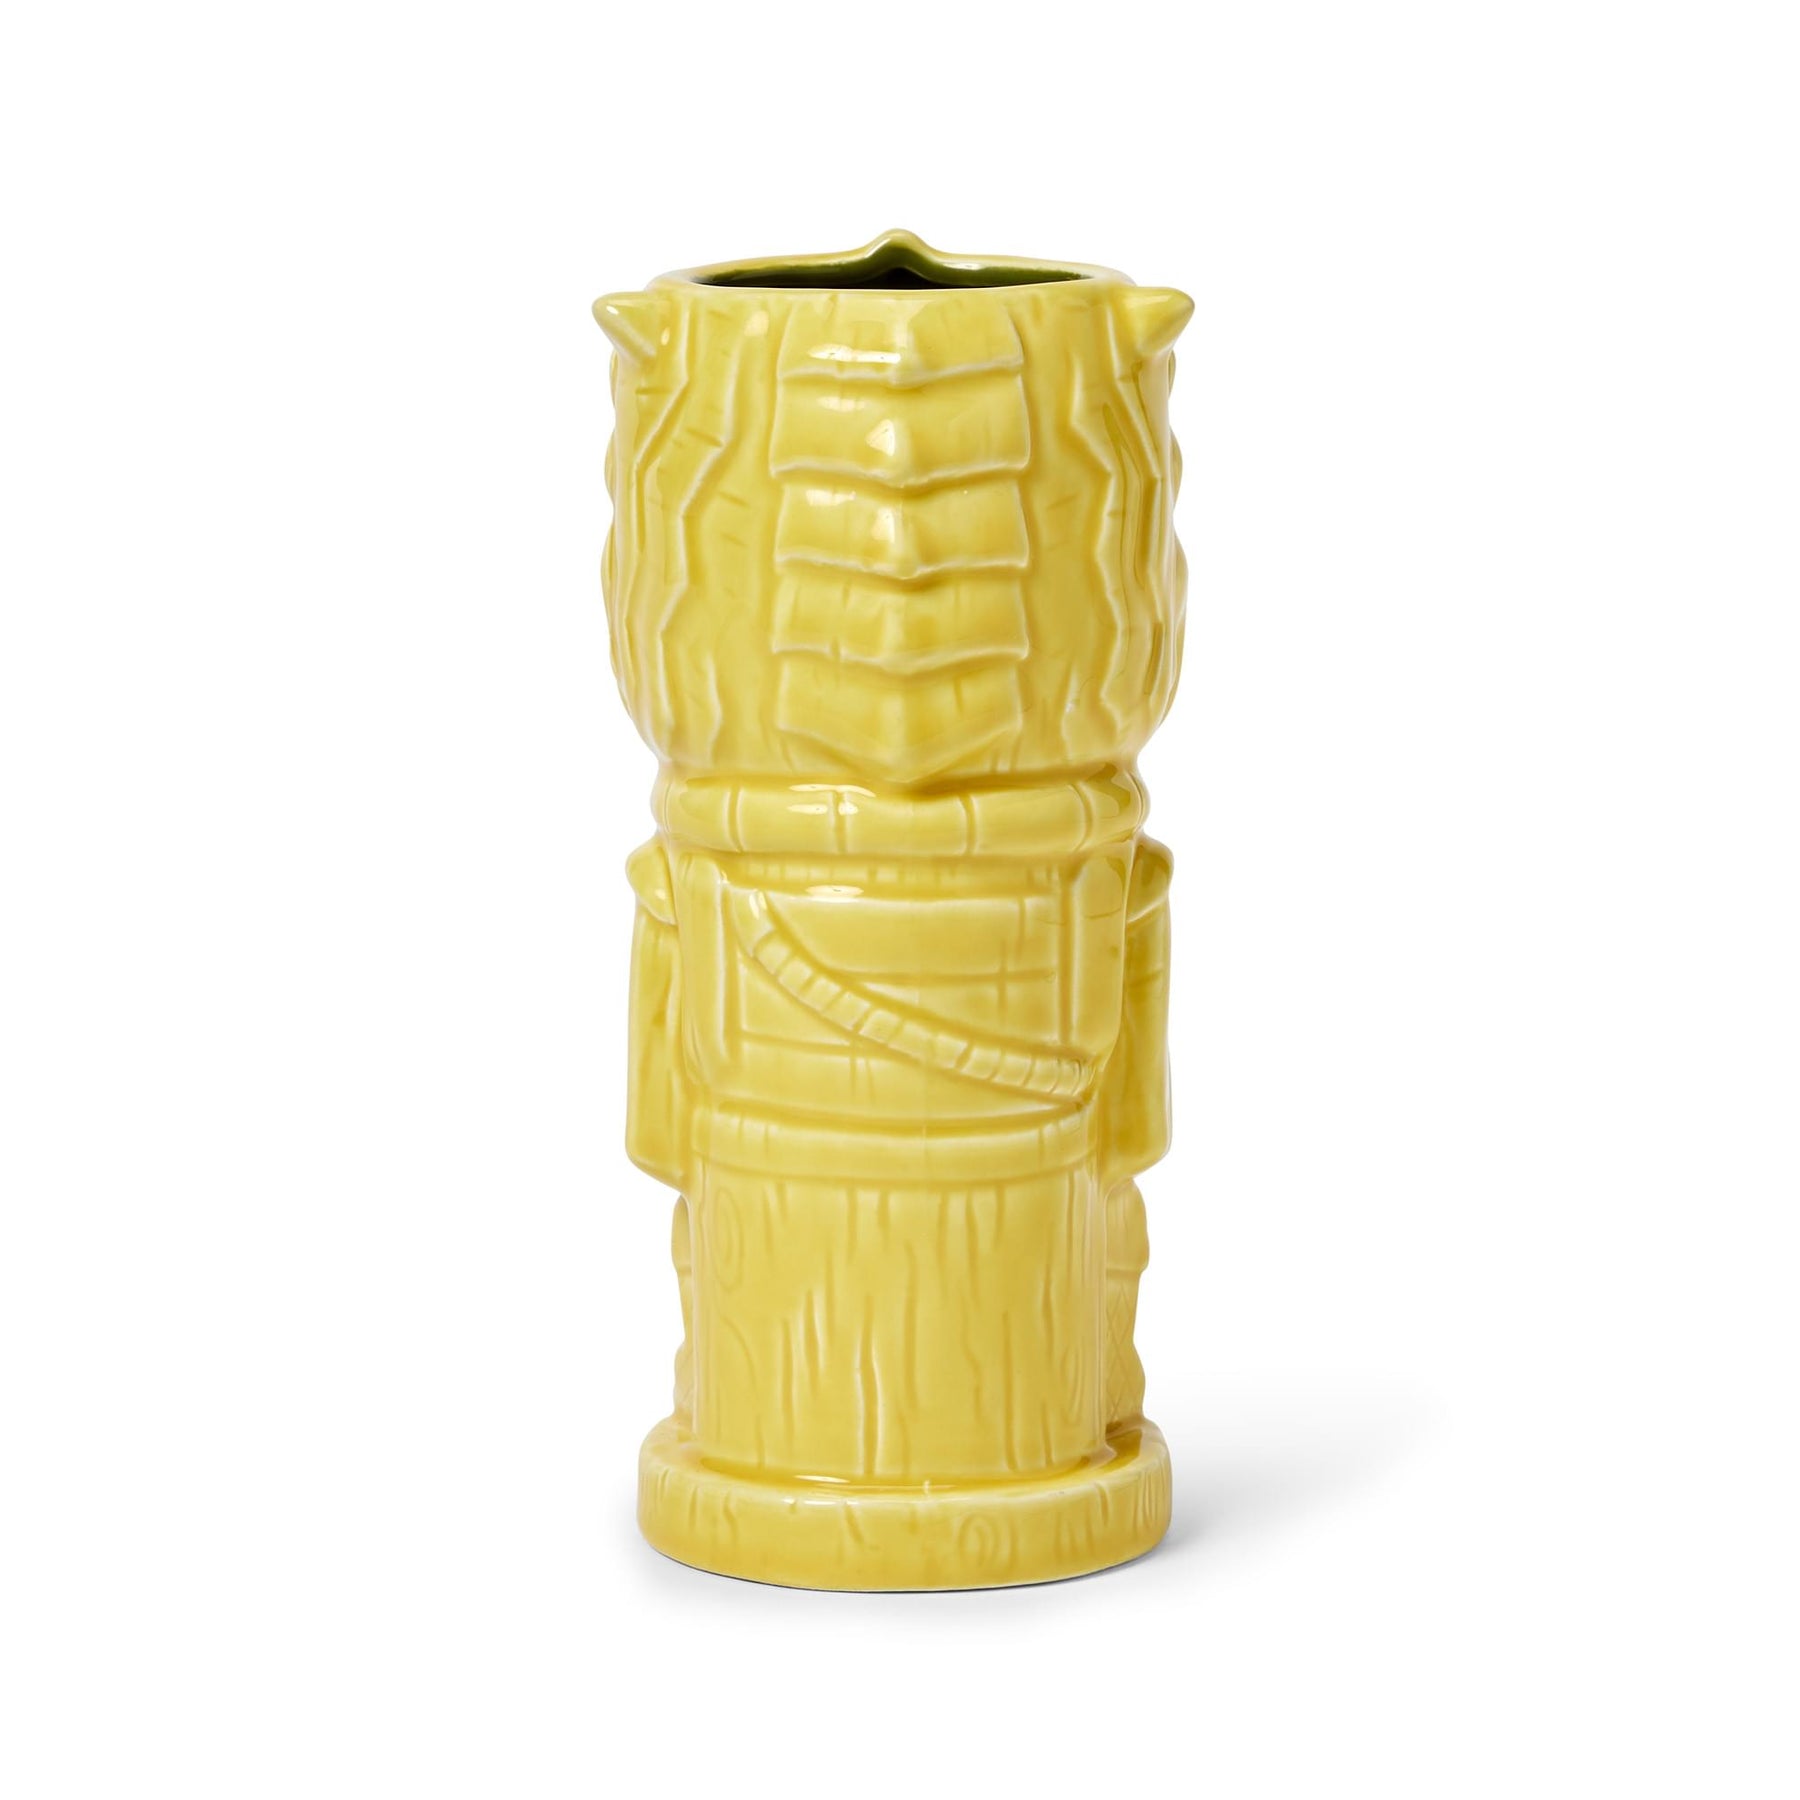 Geeki Tikis Star Wars Bossk Mug | Ceramic Tiki Style Cup | Holds 20 Ounces